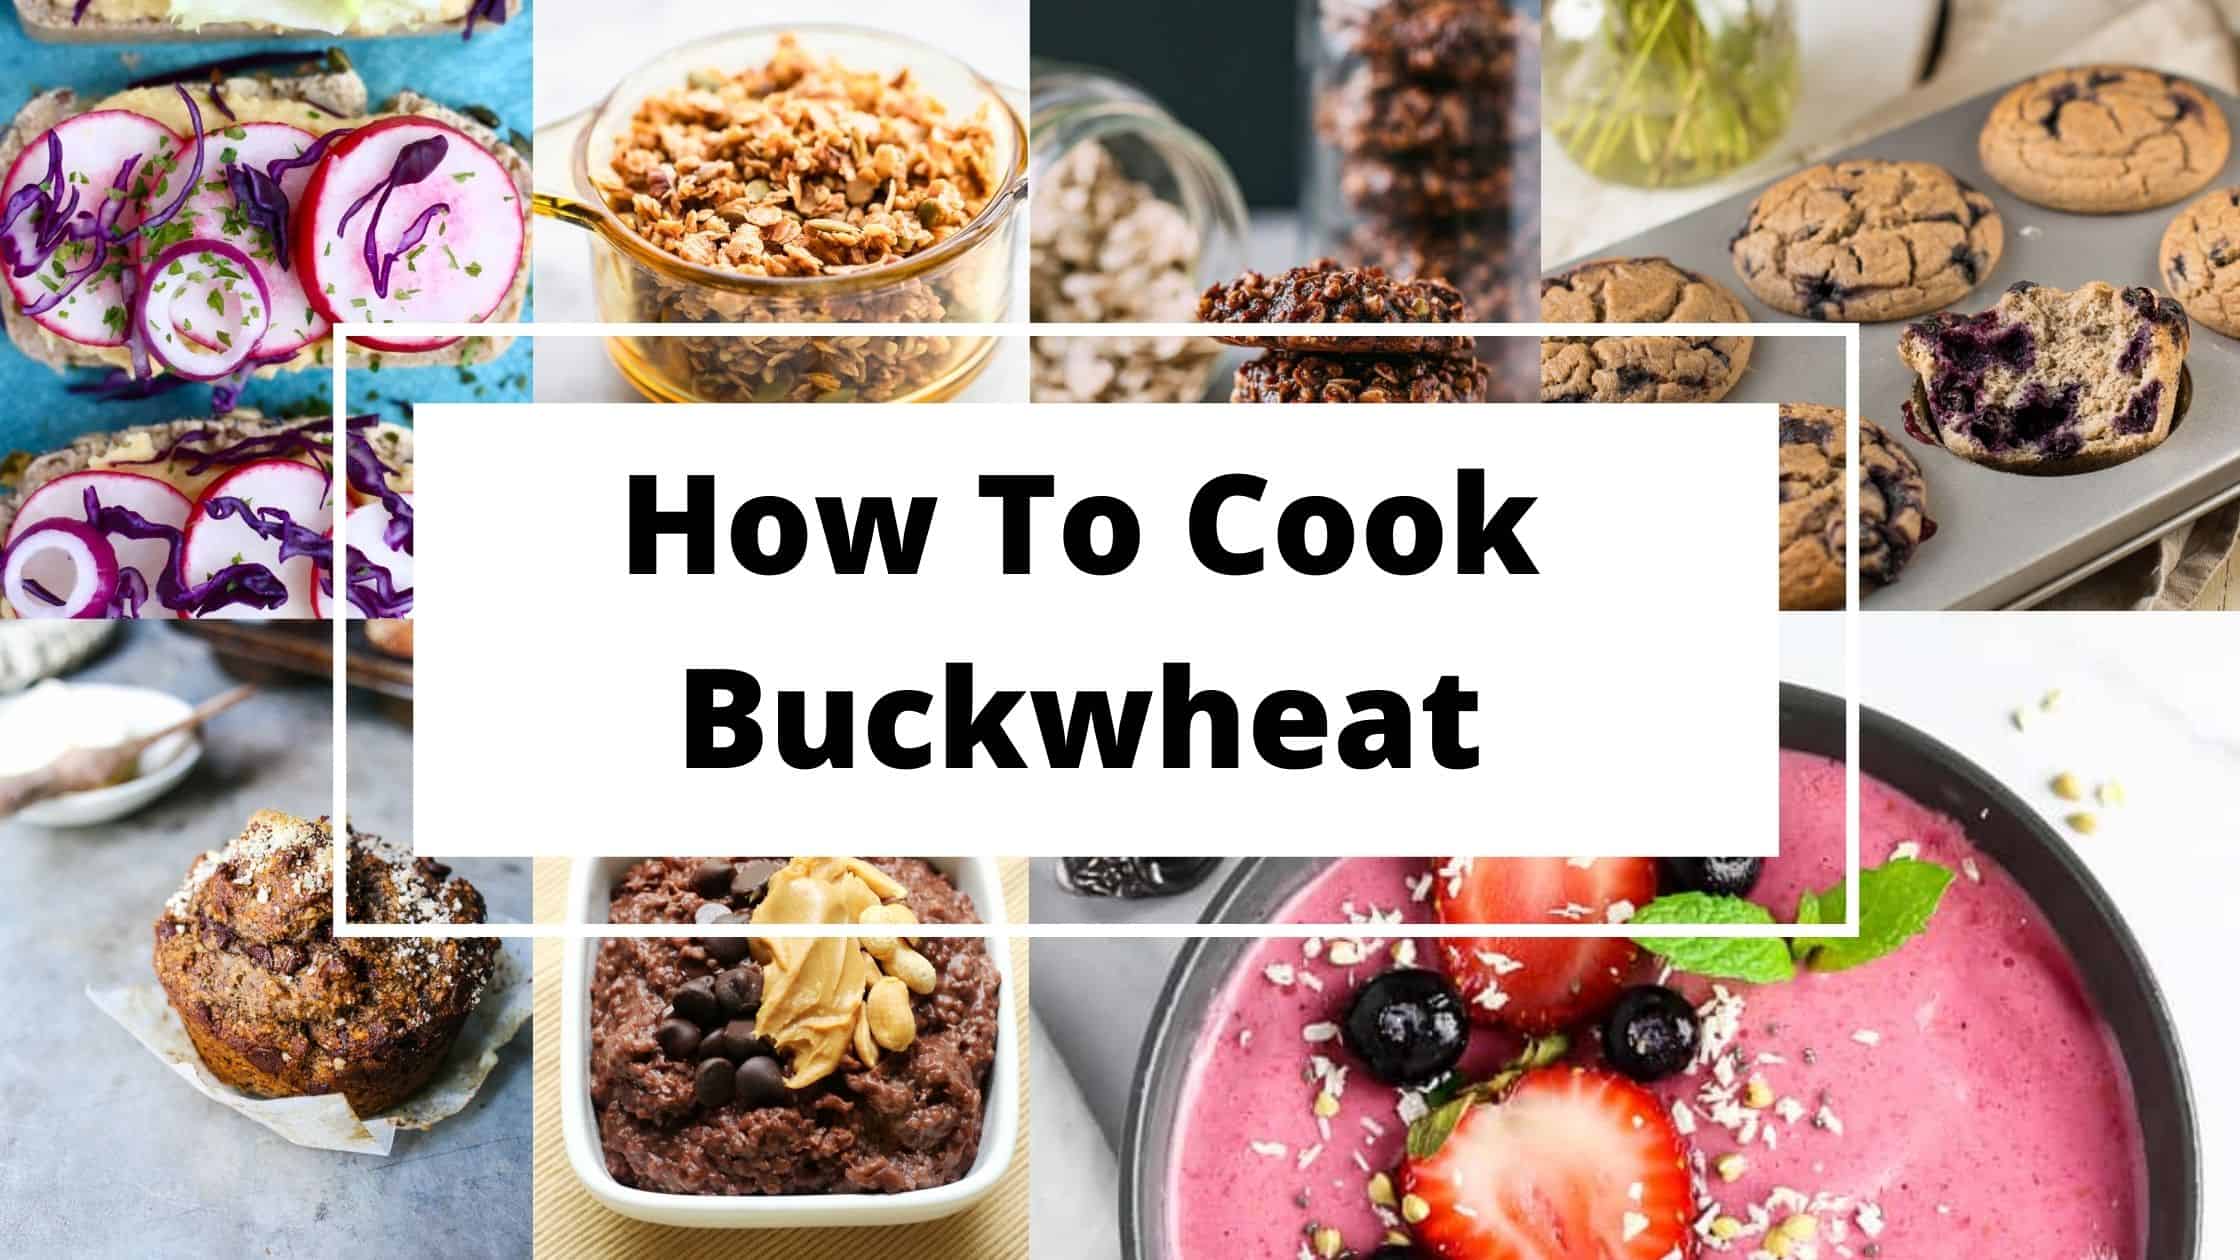 Cooking Buckwheat | How To Cook Buckwheat